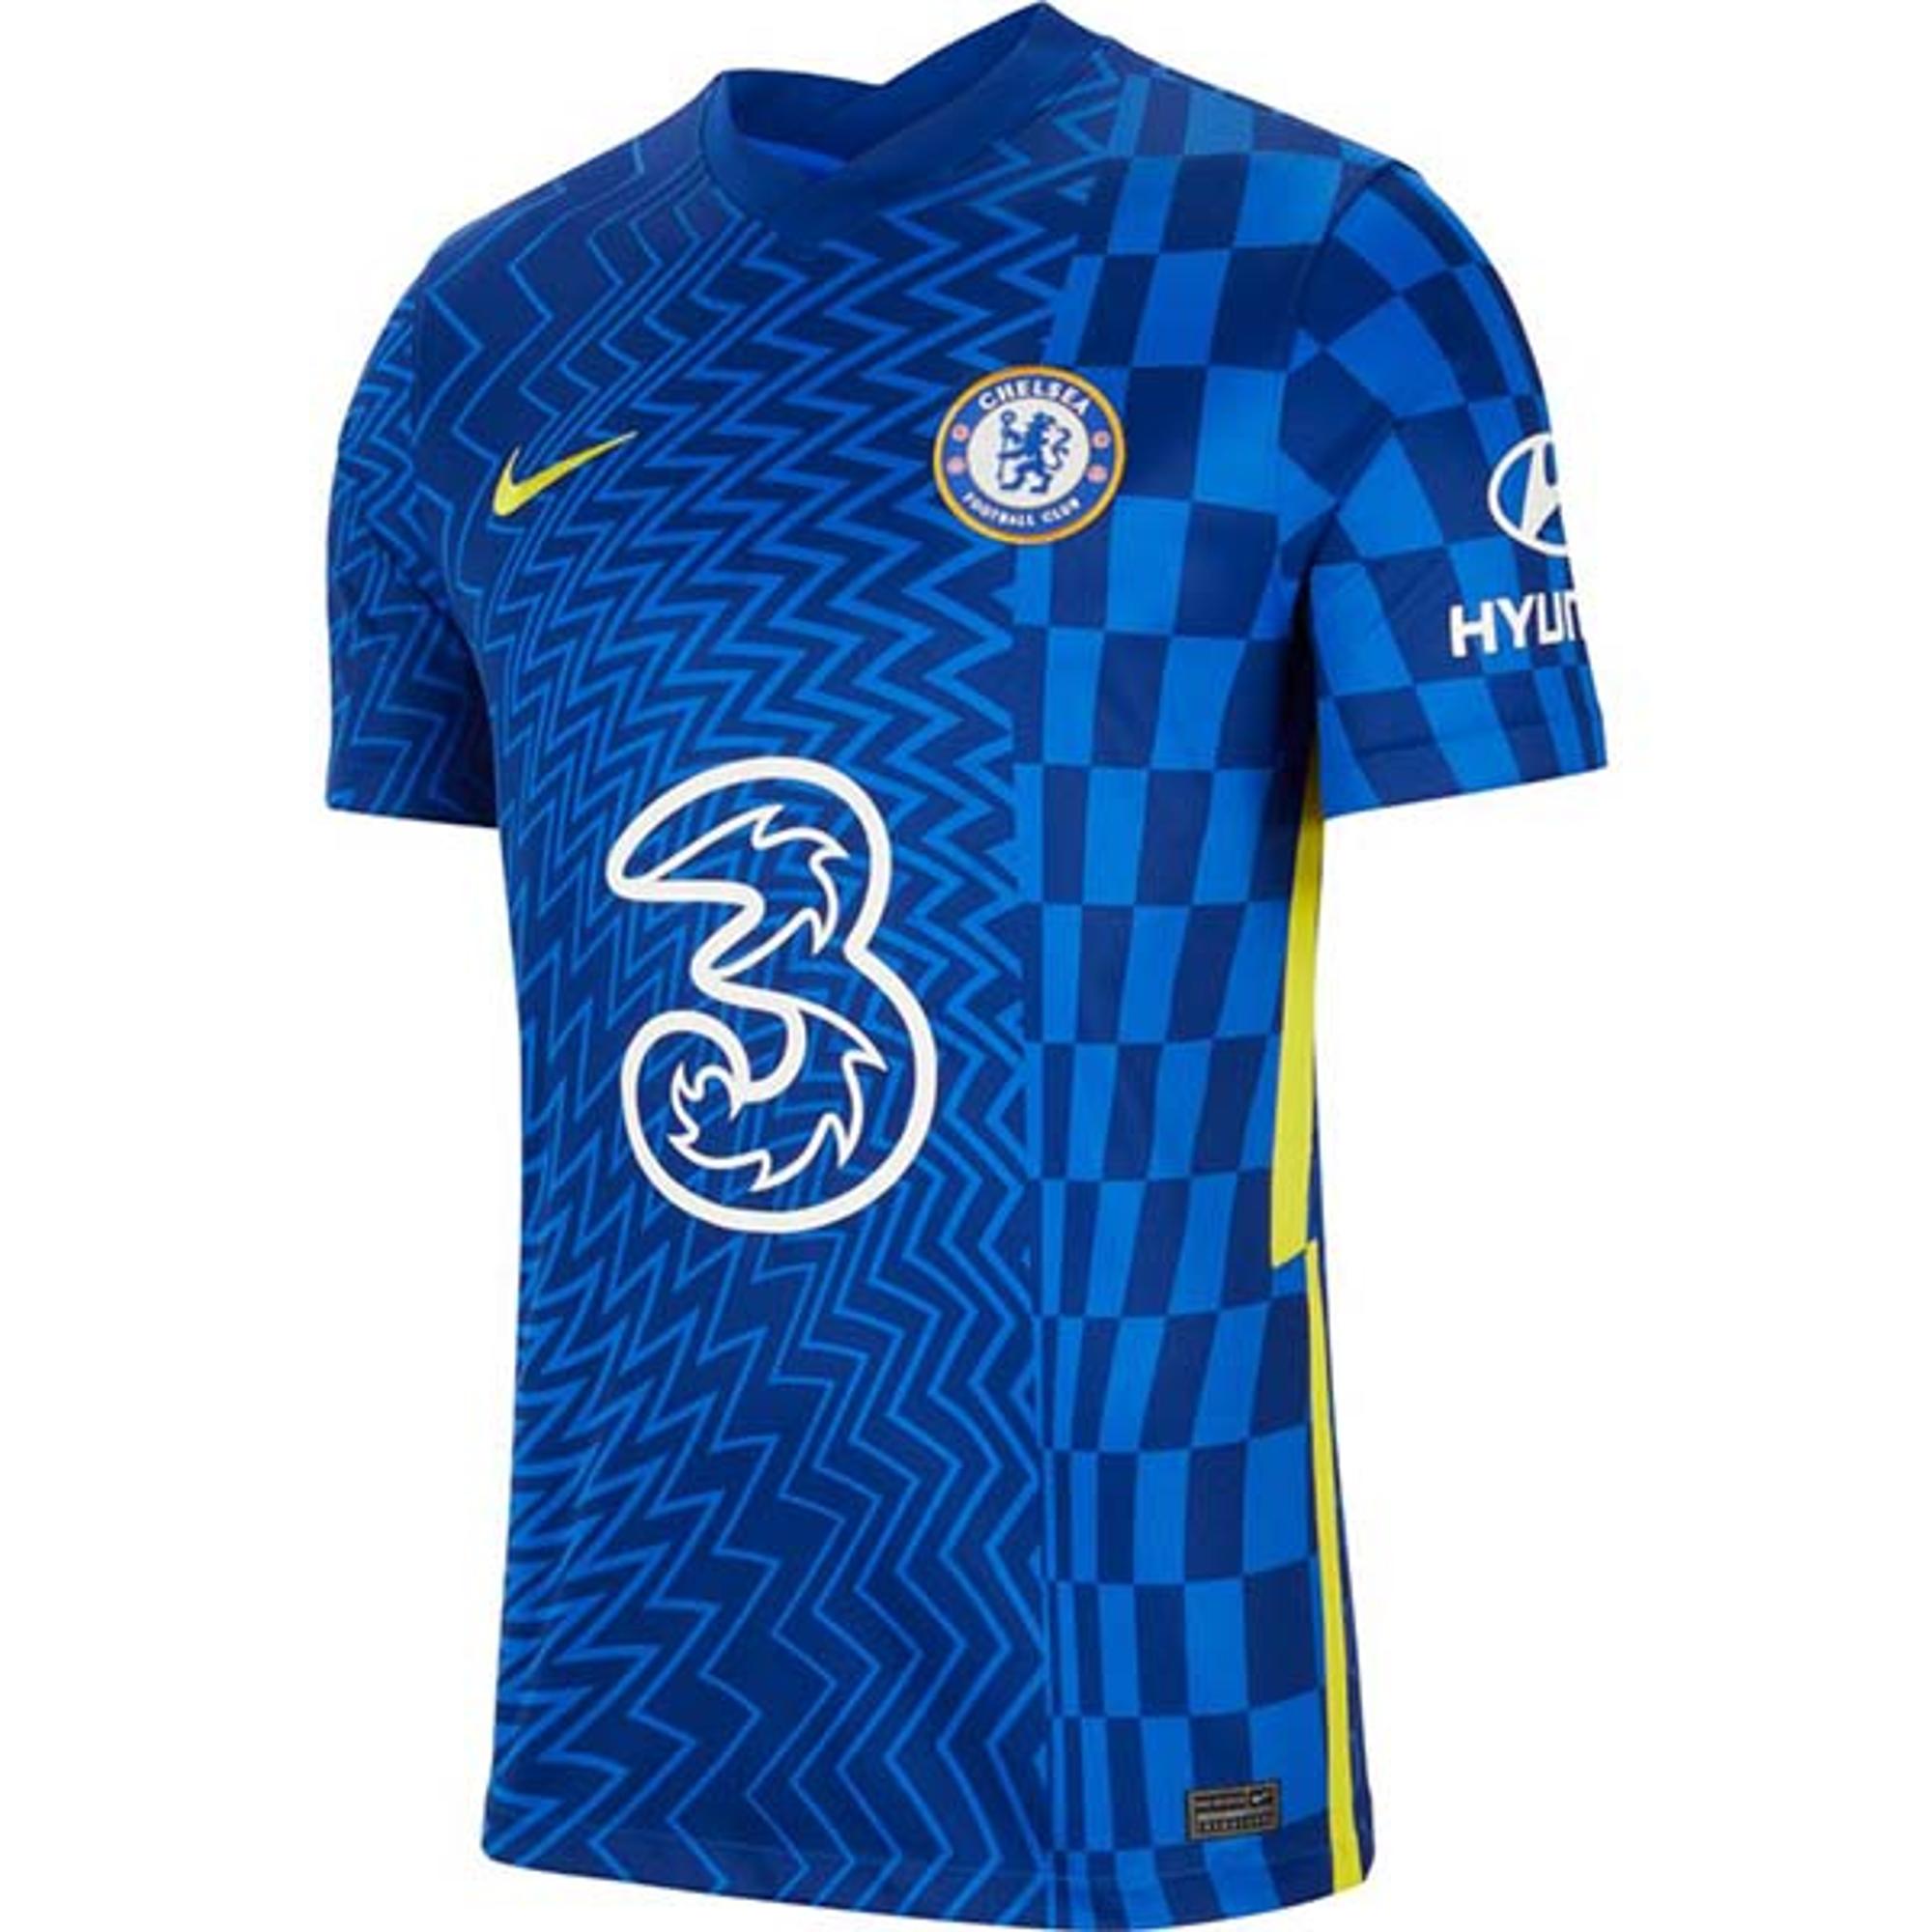 Nike Chelsea 21 22 Home Kit Leaked Full Look Footy Headlines - Gambaran